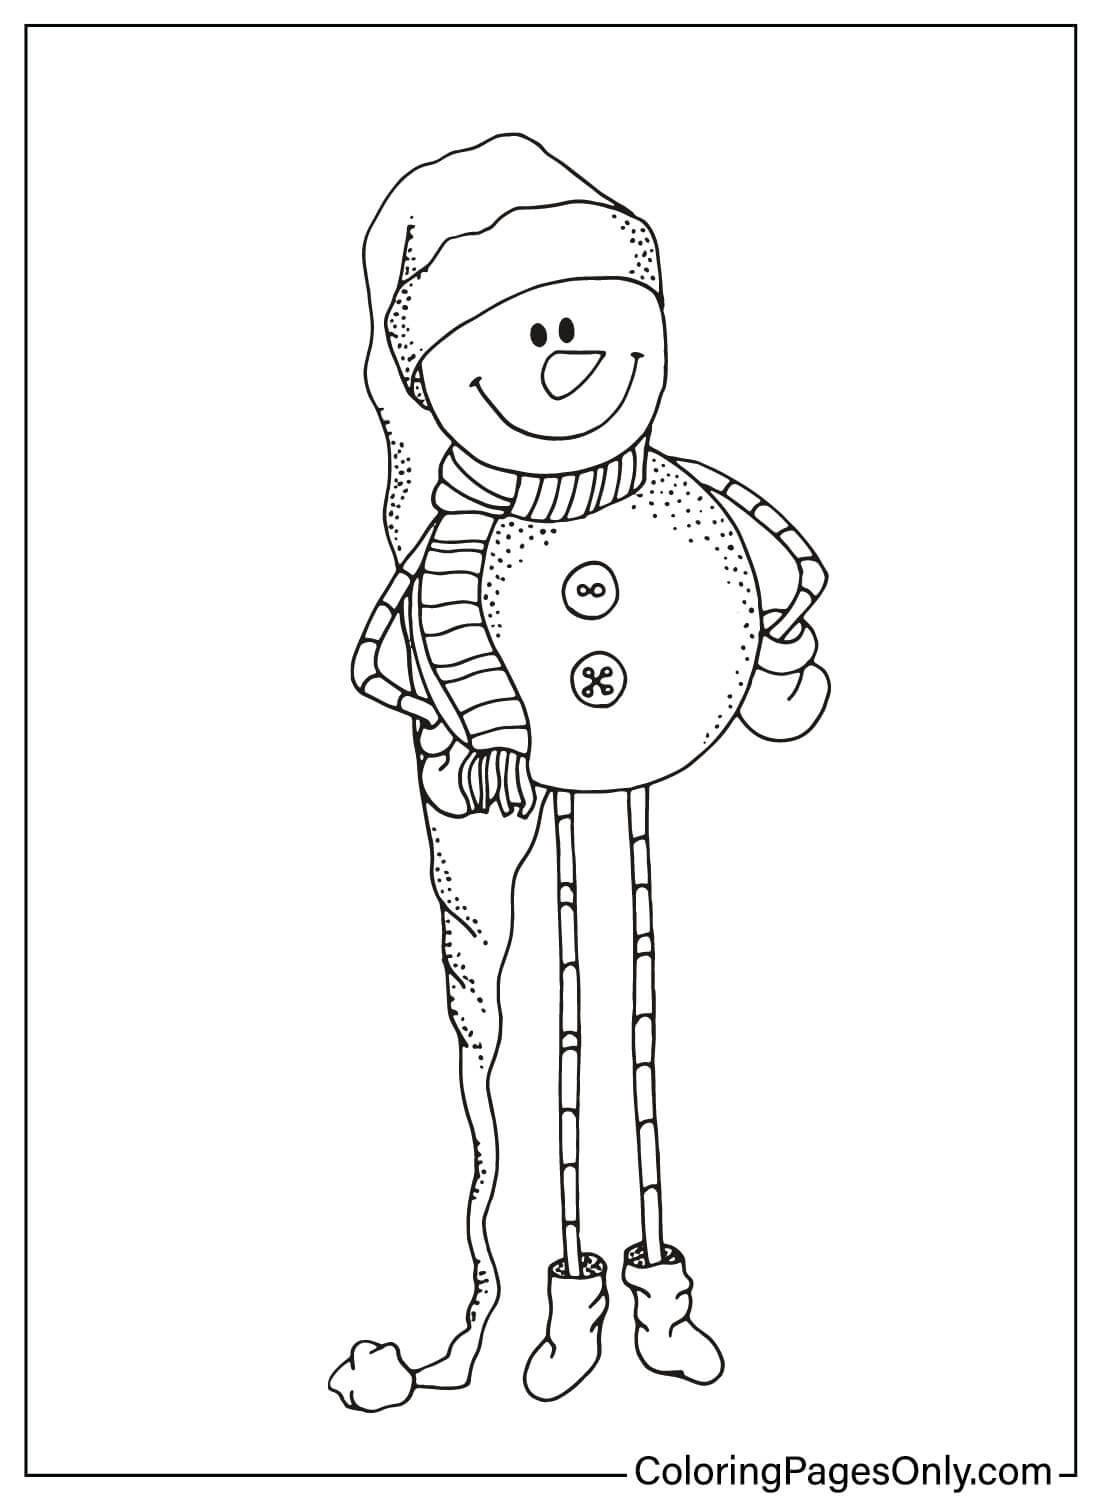 Página para colorir boneco de neve para impressão